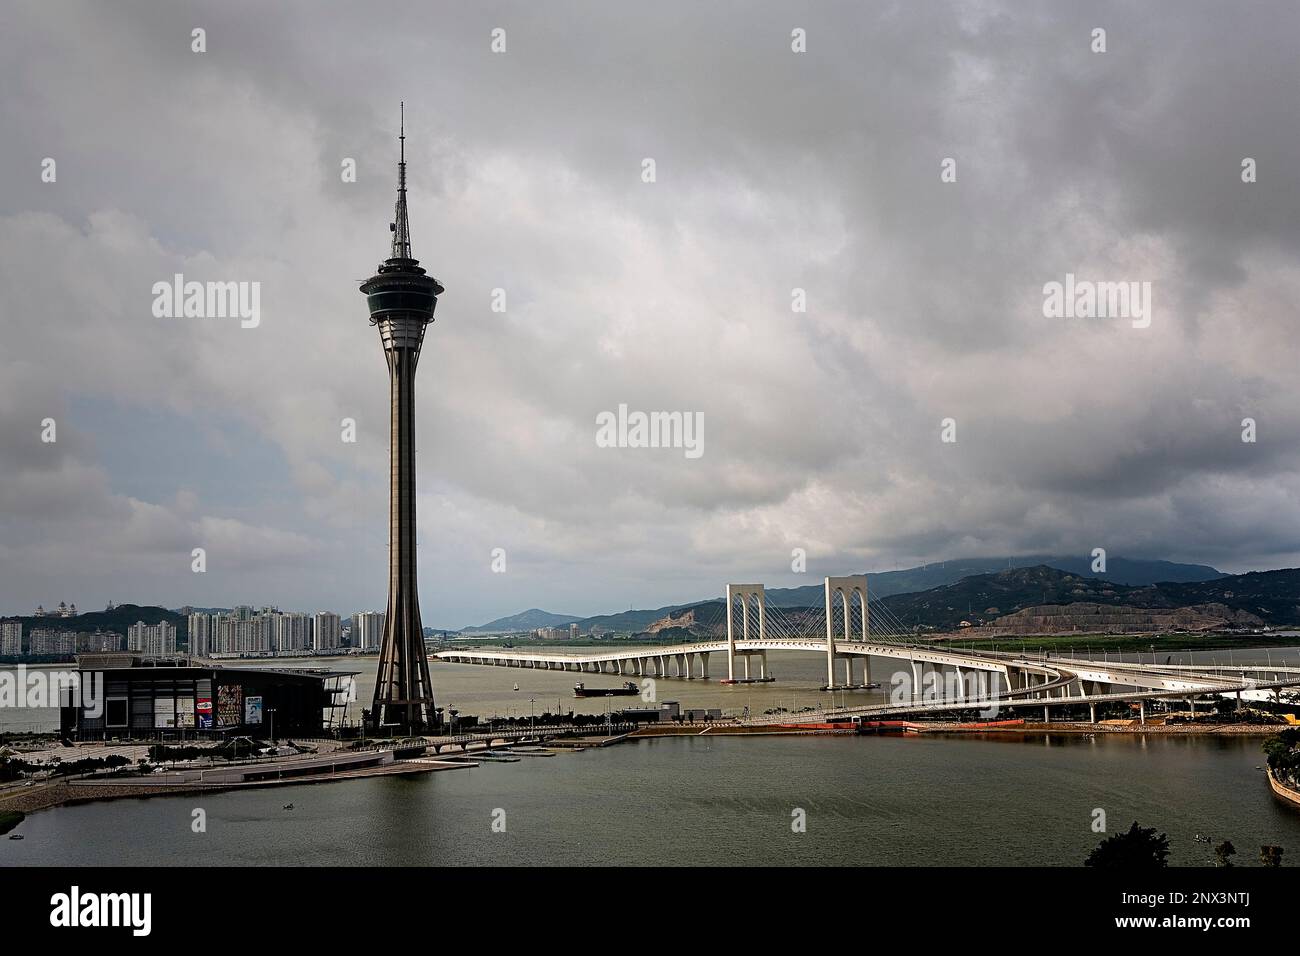 Macau Tower and Sai Van bridge that links Macau to Taipa island,Macau,China Stock Photo